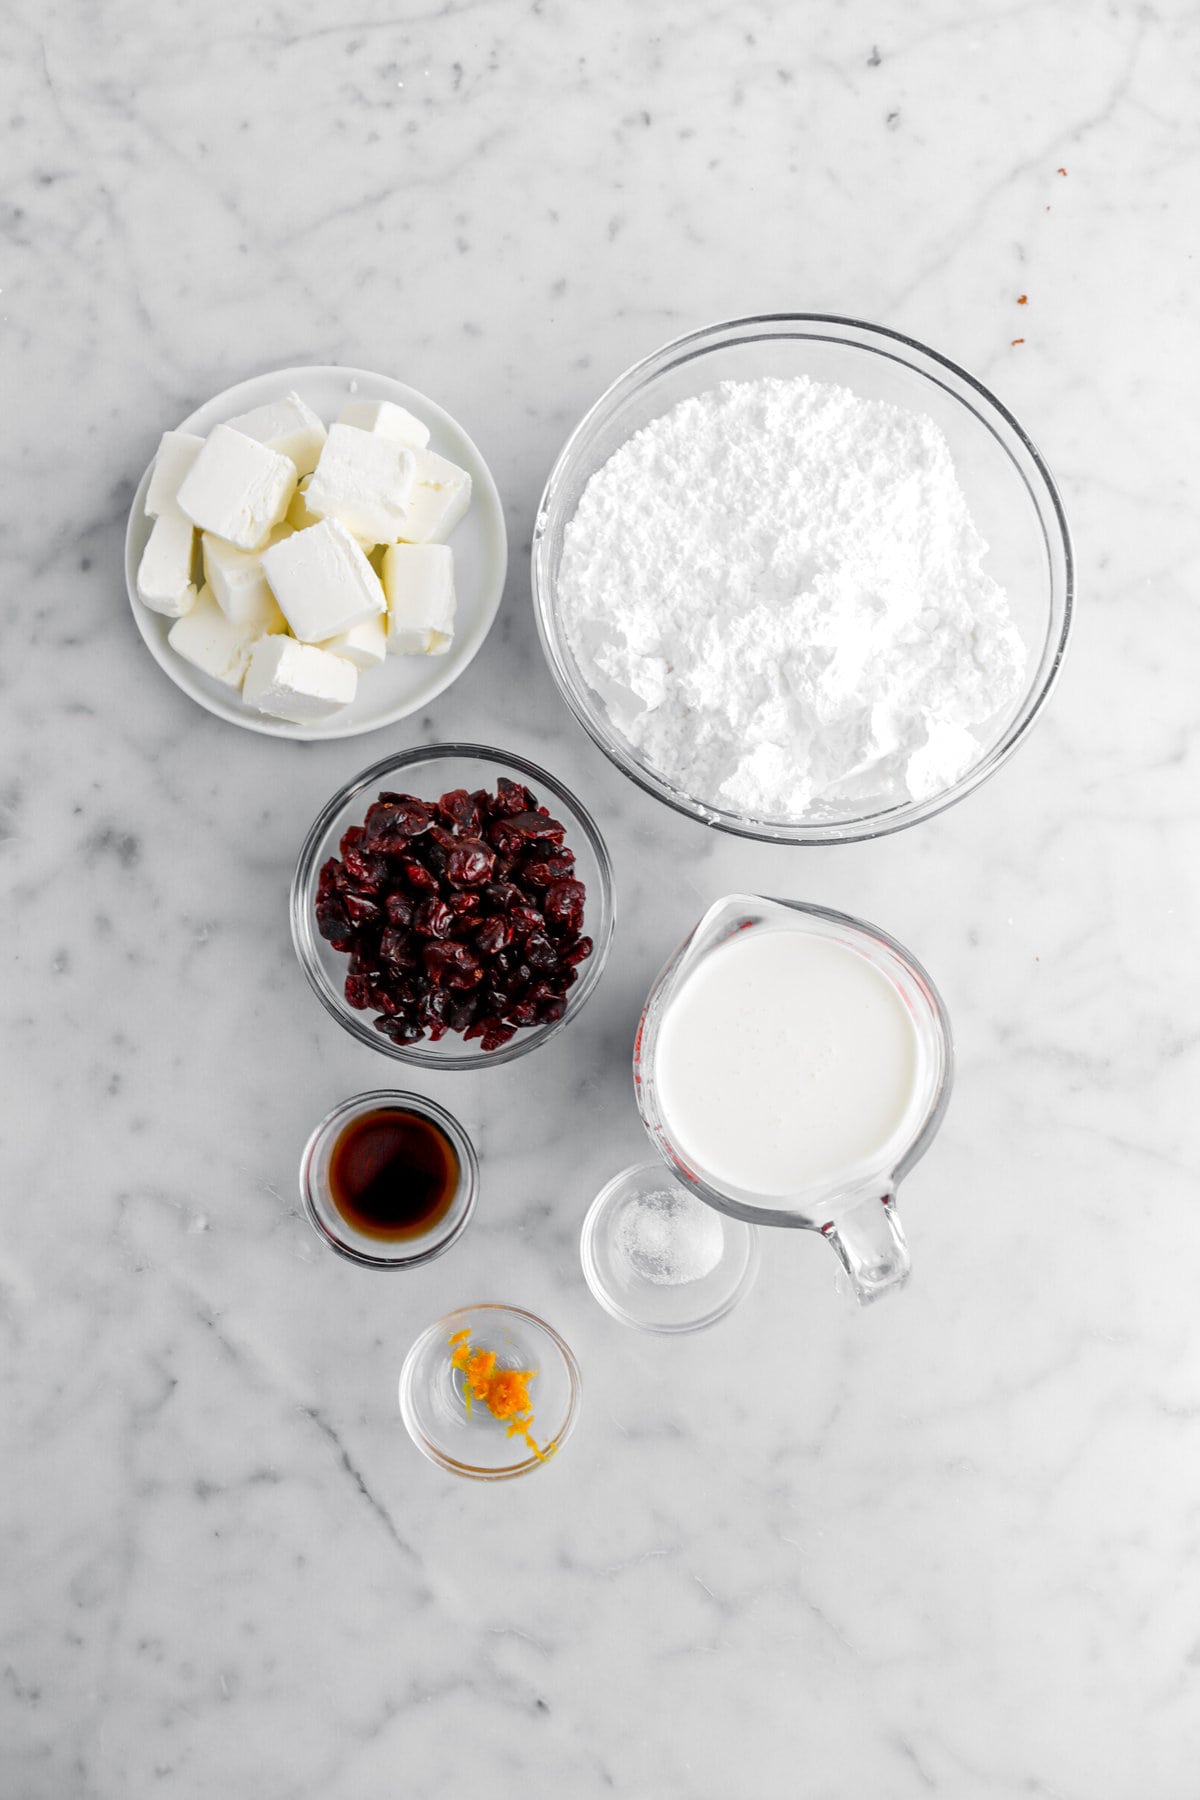 cream cheese, powdered sugar, dried cranberries, vanilla, heavy cream, salt, and orange zest on marble surface.